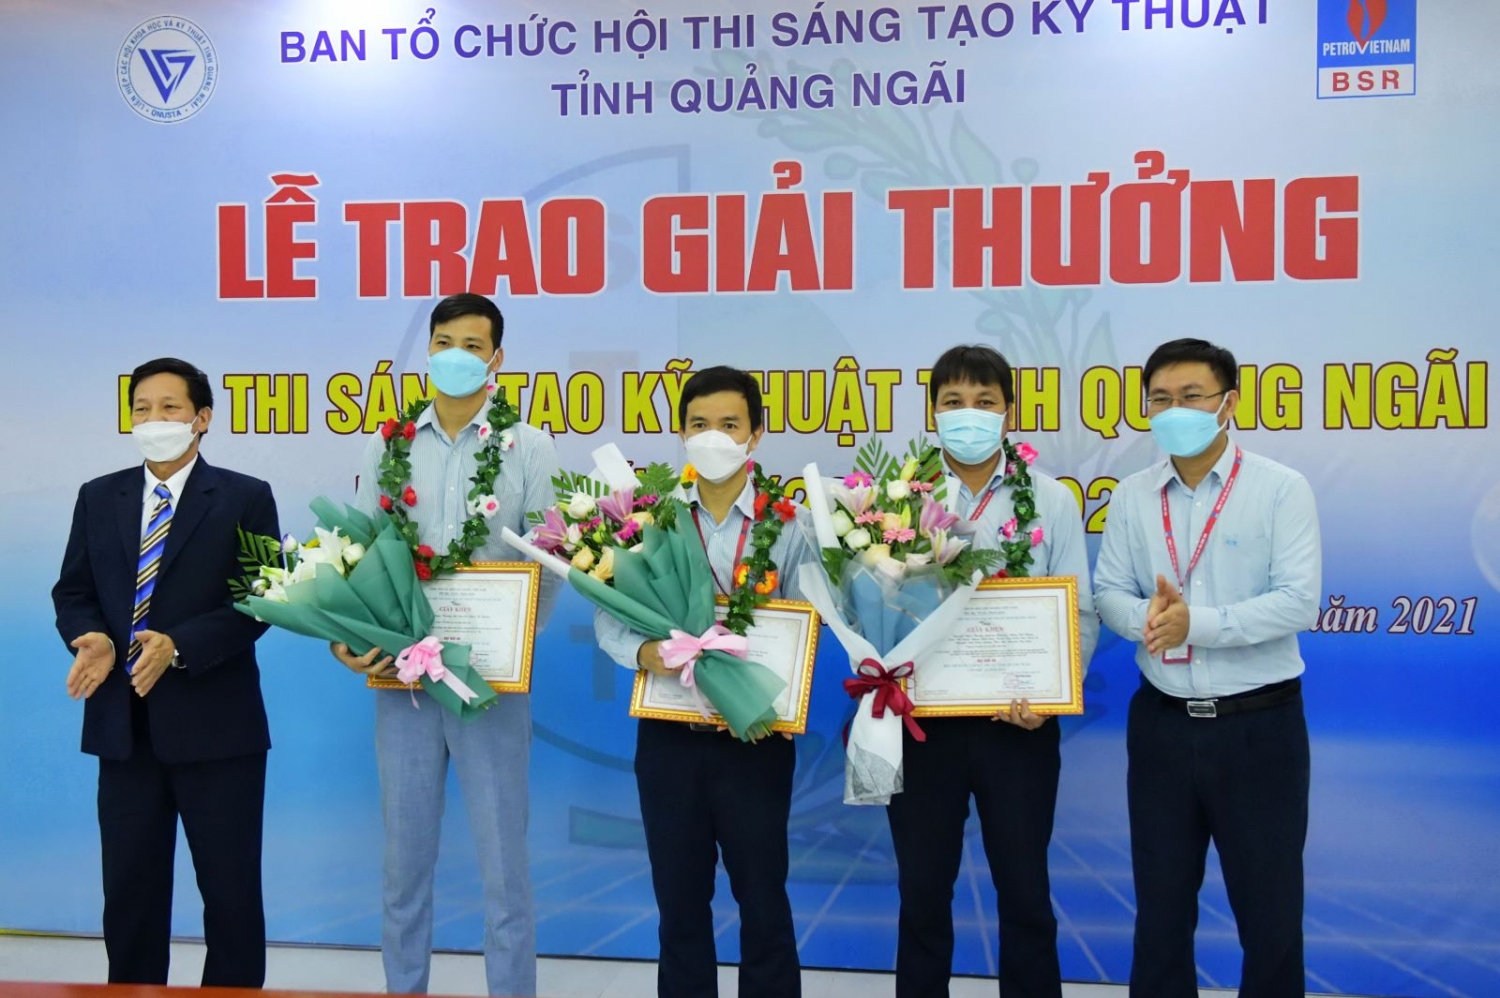 BSR đạt 7 giải thưởng tại Hội thi Sáng tạo Kỹ thuật tỉnh Quảng Ngãi lần thứ 12